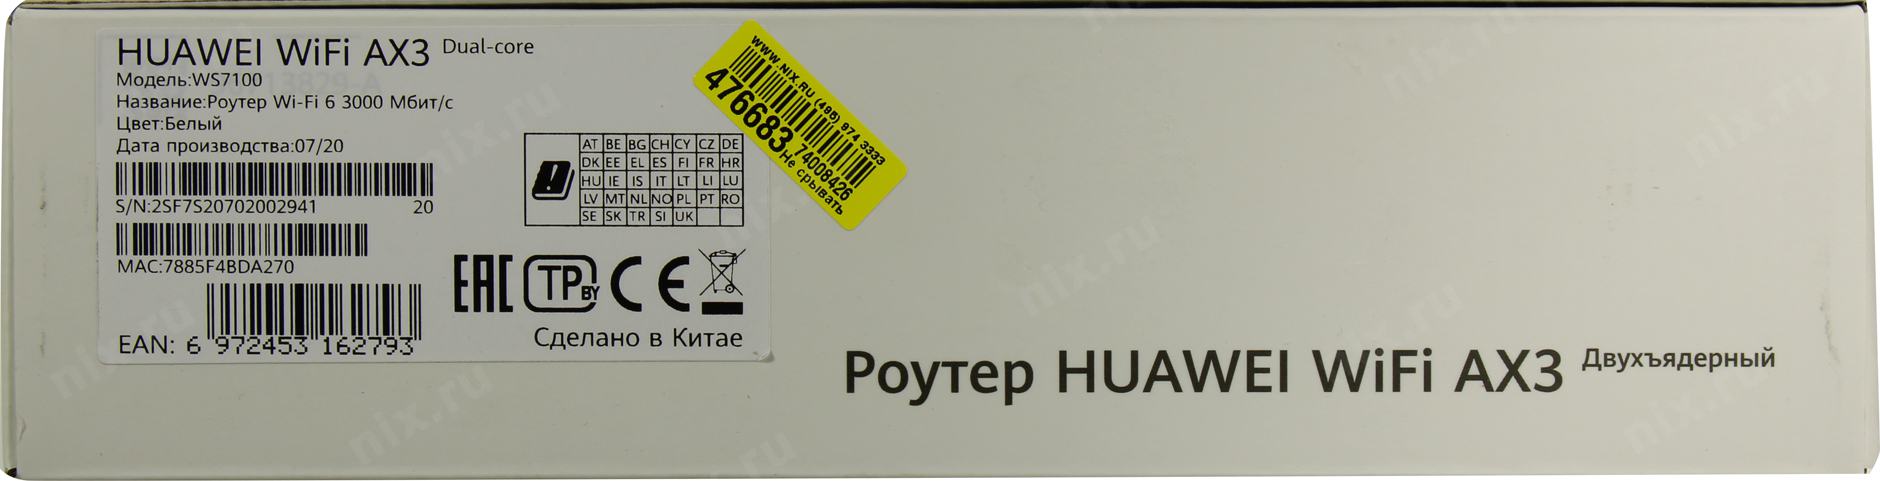 Huawei WIFI ax3 Dual Core ws7100. Ws7100. Huawei ax3 ws7100. Huawei ws7100 описание.